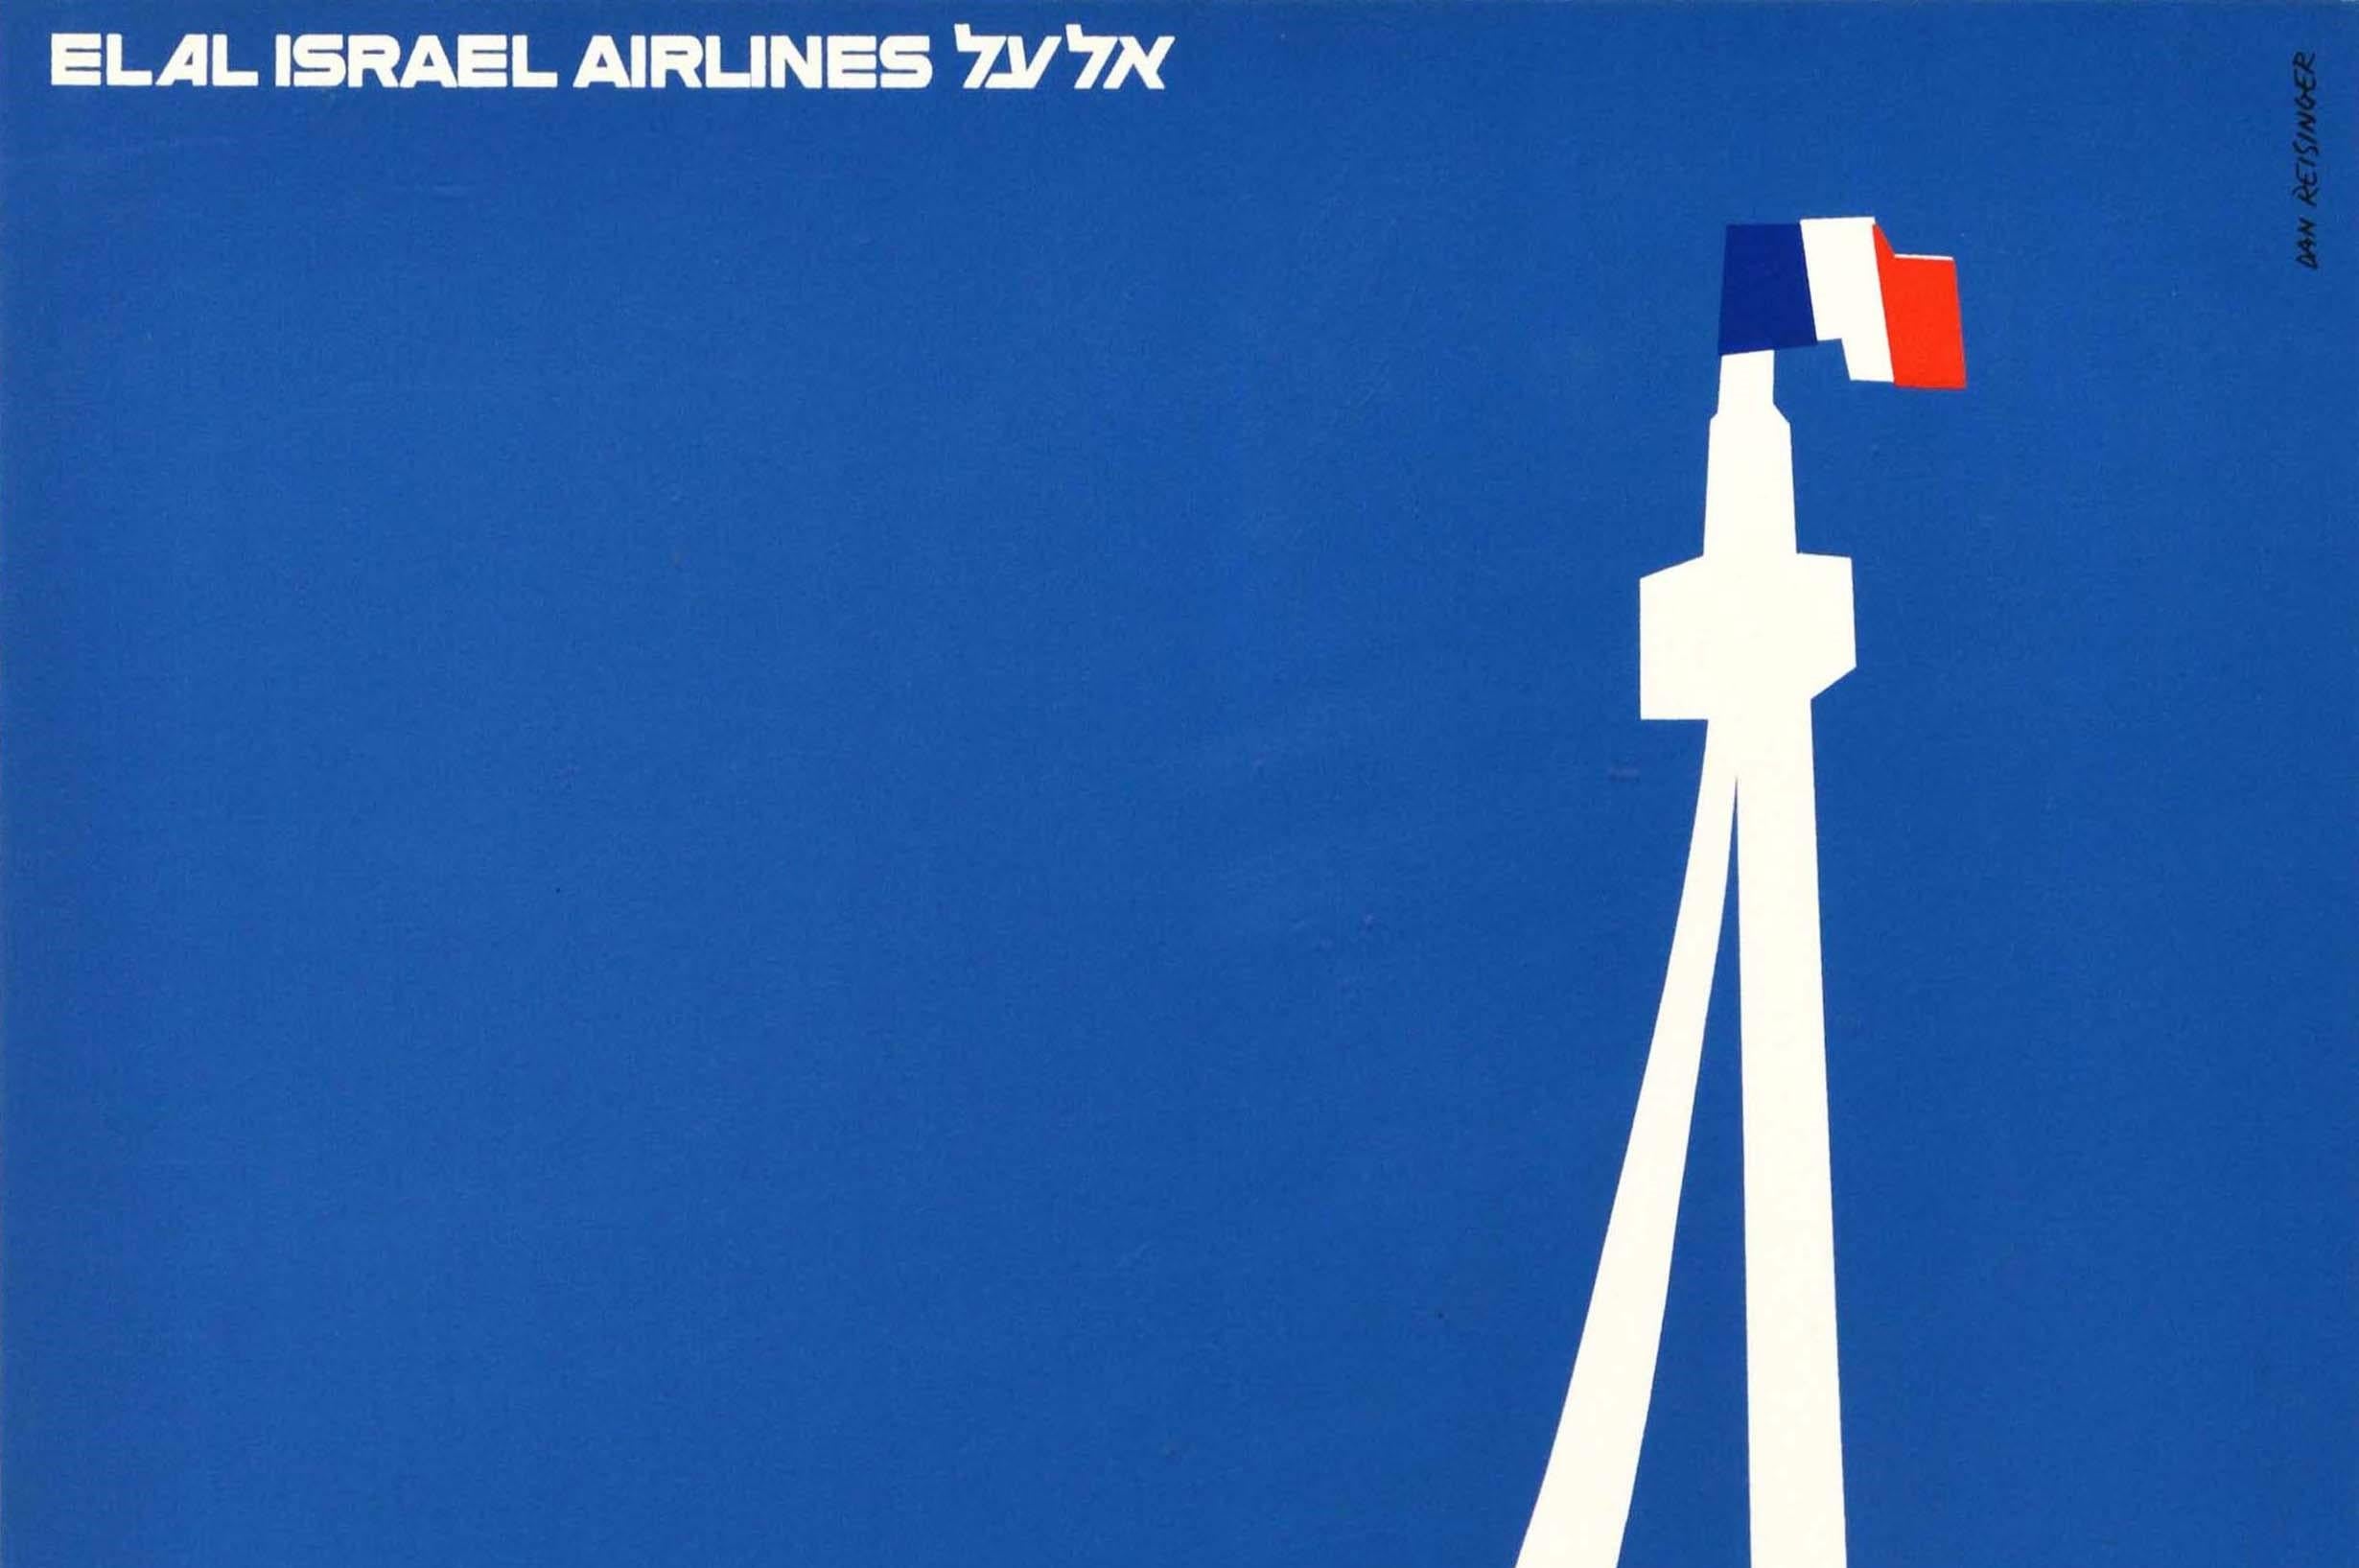 Original Vintage Travel Poster El Al Israel Airlines Paris France Eiffel Tower - Print by Dan Reisinger